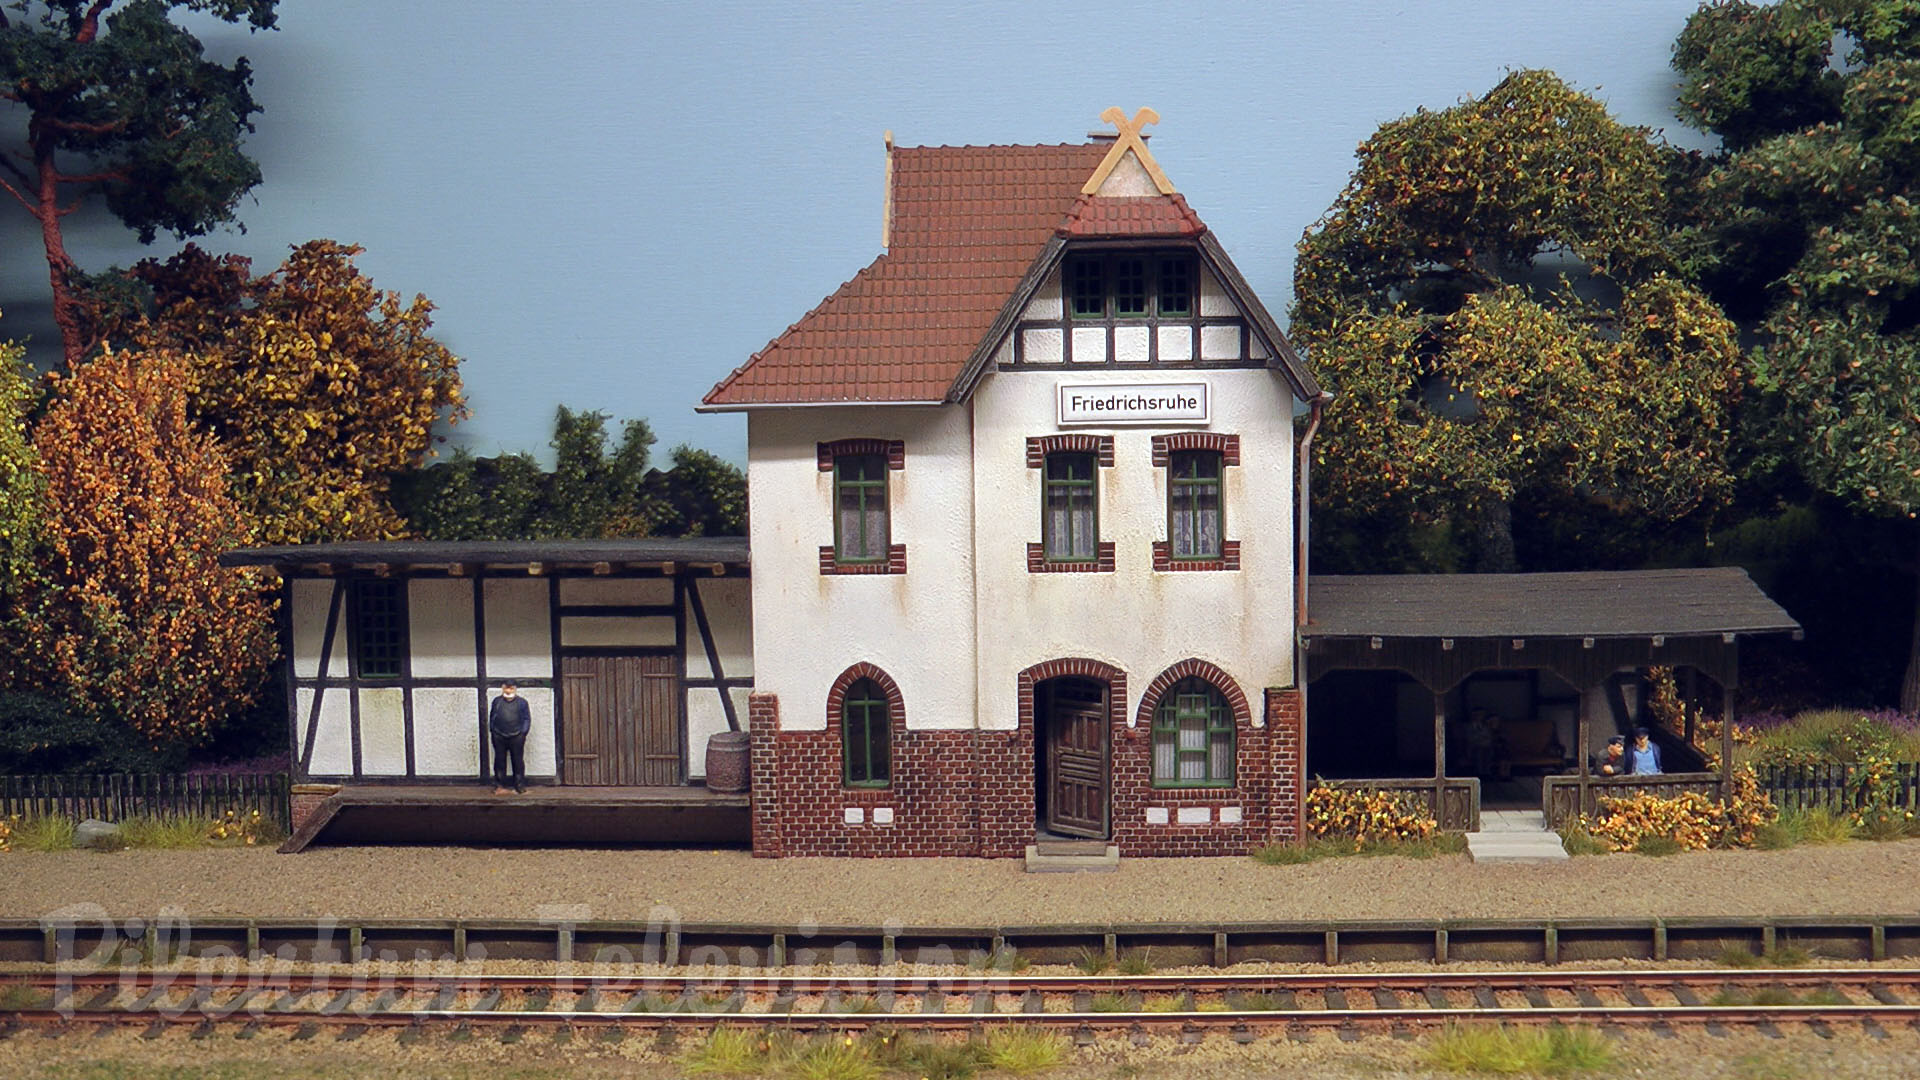 Bellissimo plastico ferroviario di treni a vapore e locomotive a vapore nella Germania dell’Est